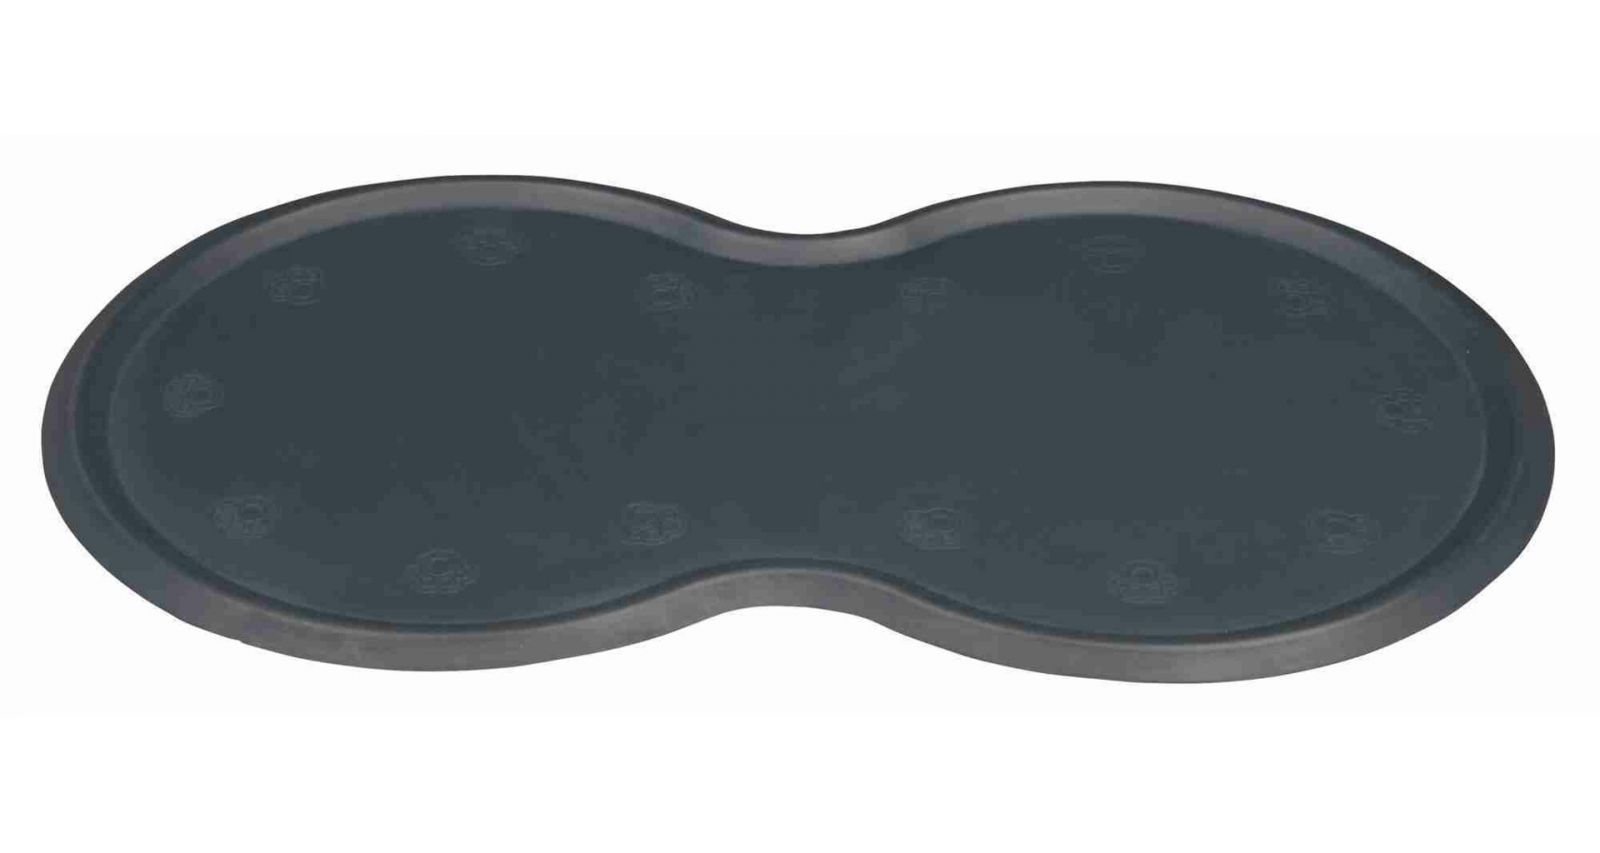 Protiskluzová gumová podložkapod misky 45x25cm TRIXIE